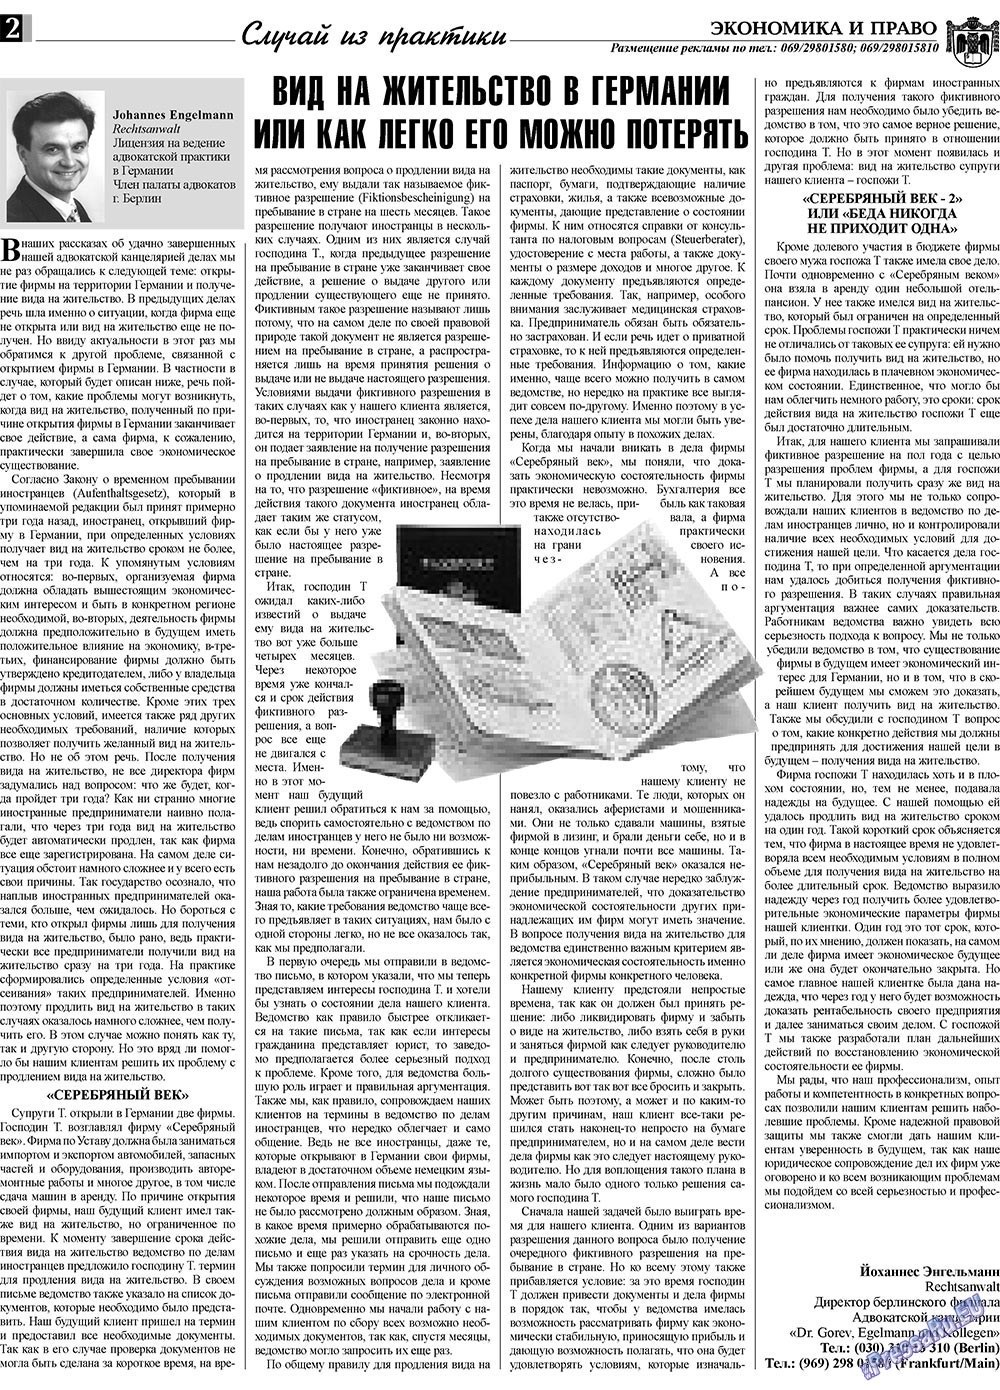 Экономика и право, газета. 2010 №2 стр.2